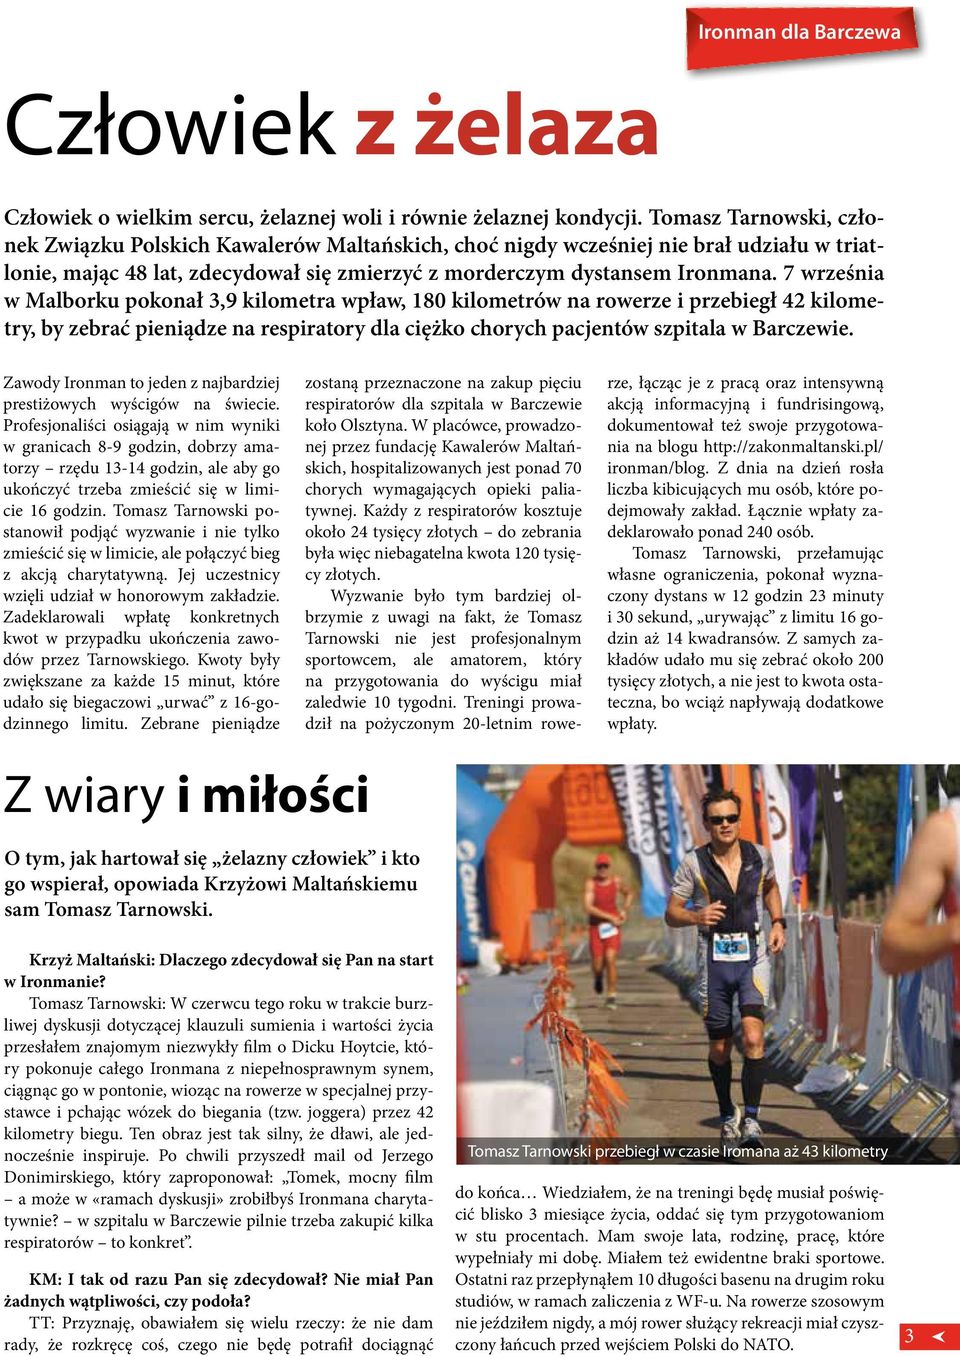 7 września w Malborku pokonał 3,9 kilometra wpław, 180 kilometrów na rowerze i przebiegł 42 kilometry, by zebrać pieniądze na respiratory dla ciężko chorych pacjentów szpitala w Barczewie.